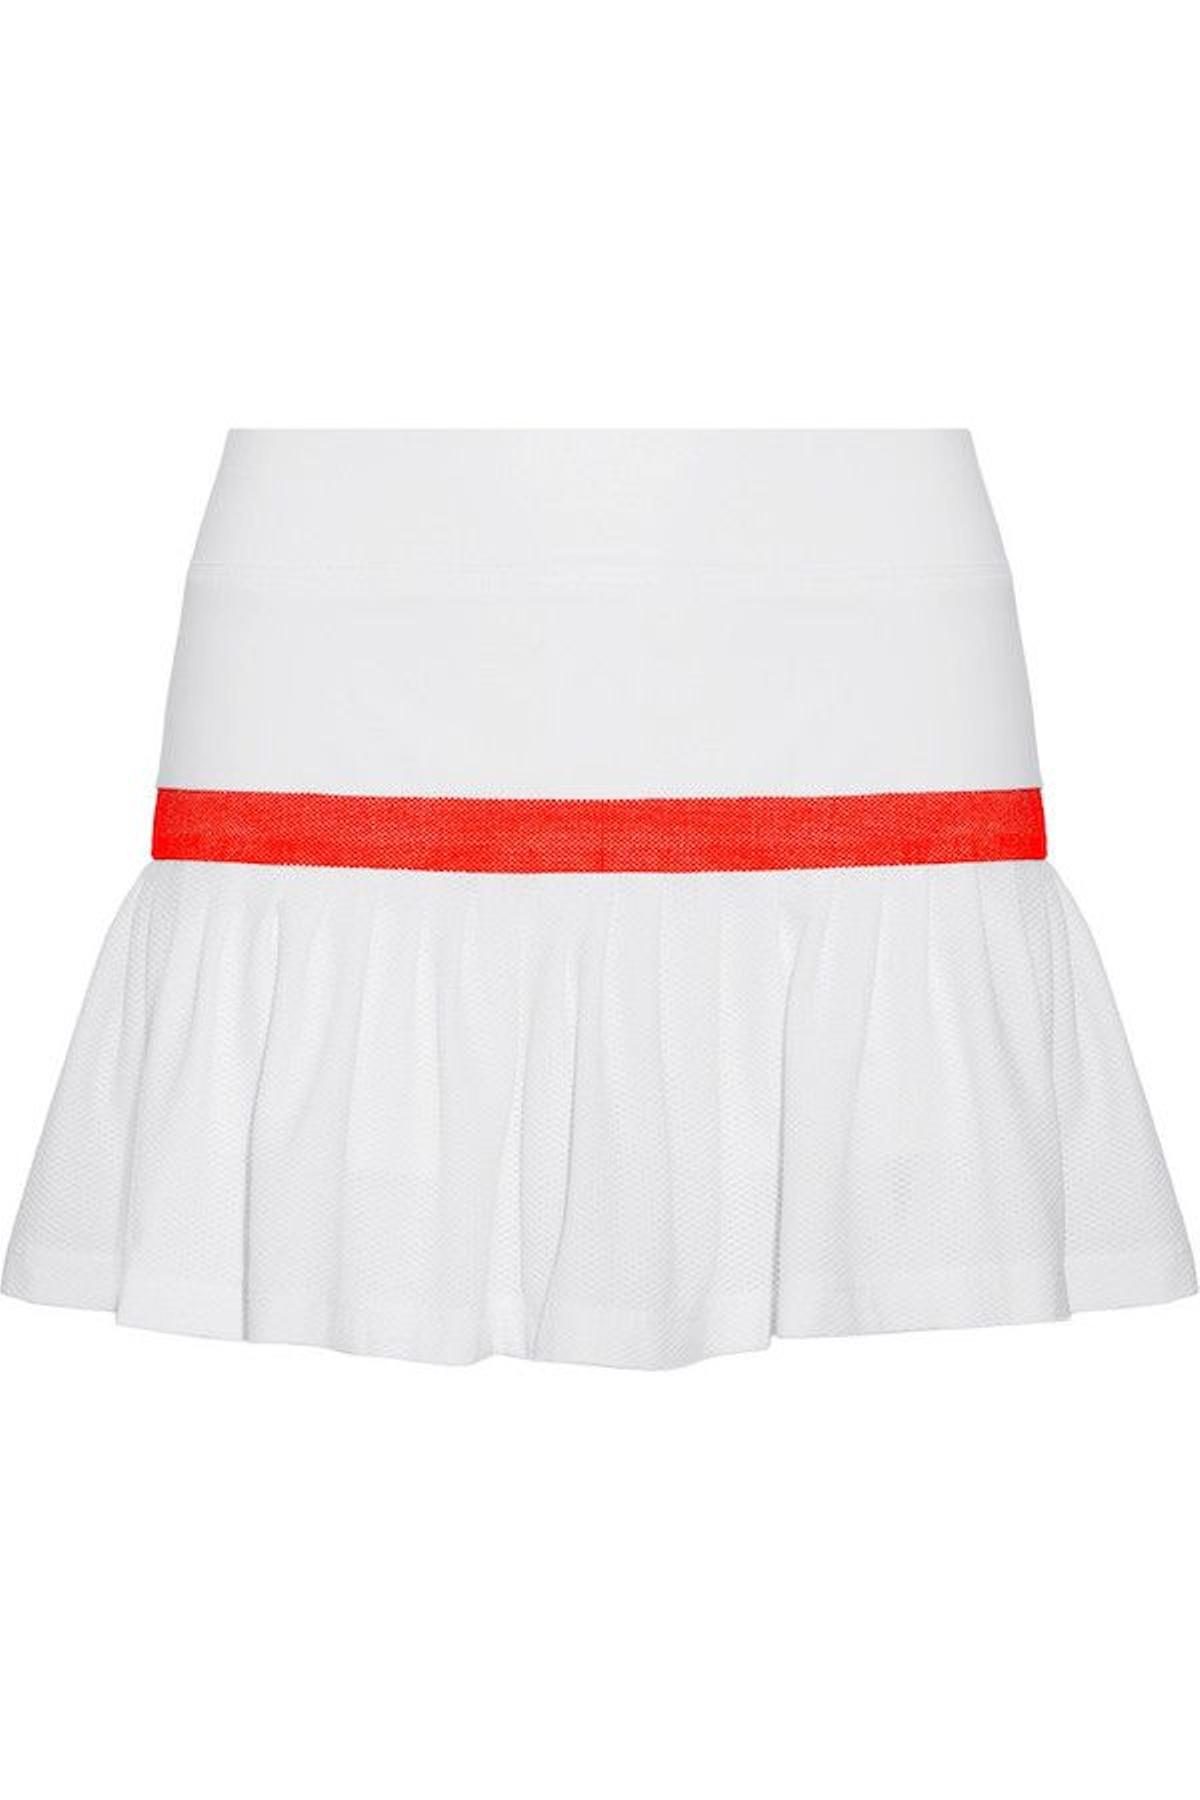 La minifalda de tenis